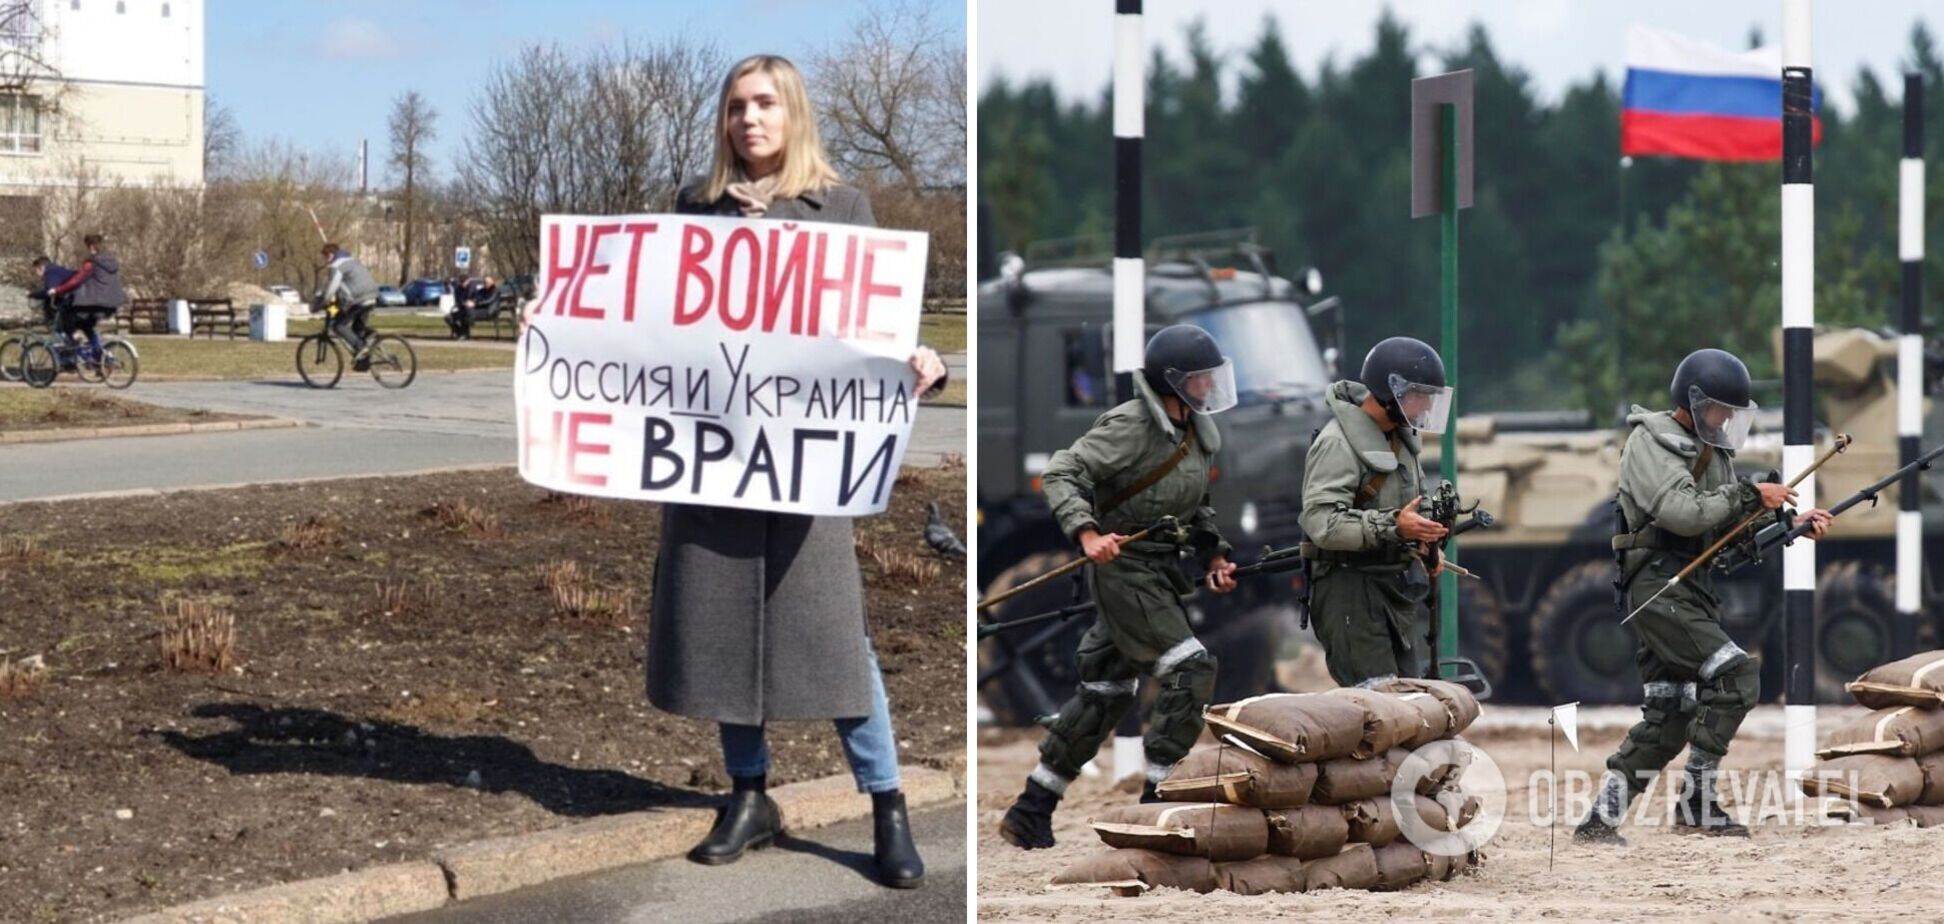 Укради флаг. Против войны с Украиной. Прекратите войну на Украине. Россия Украина нет войне.